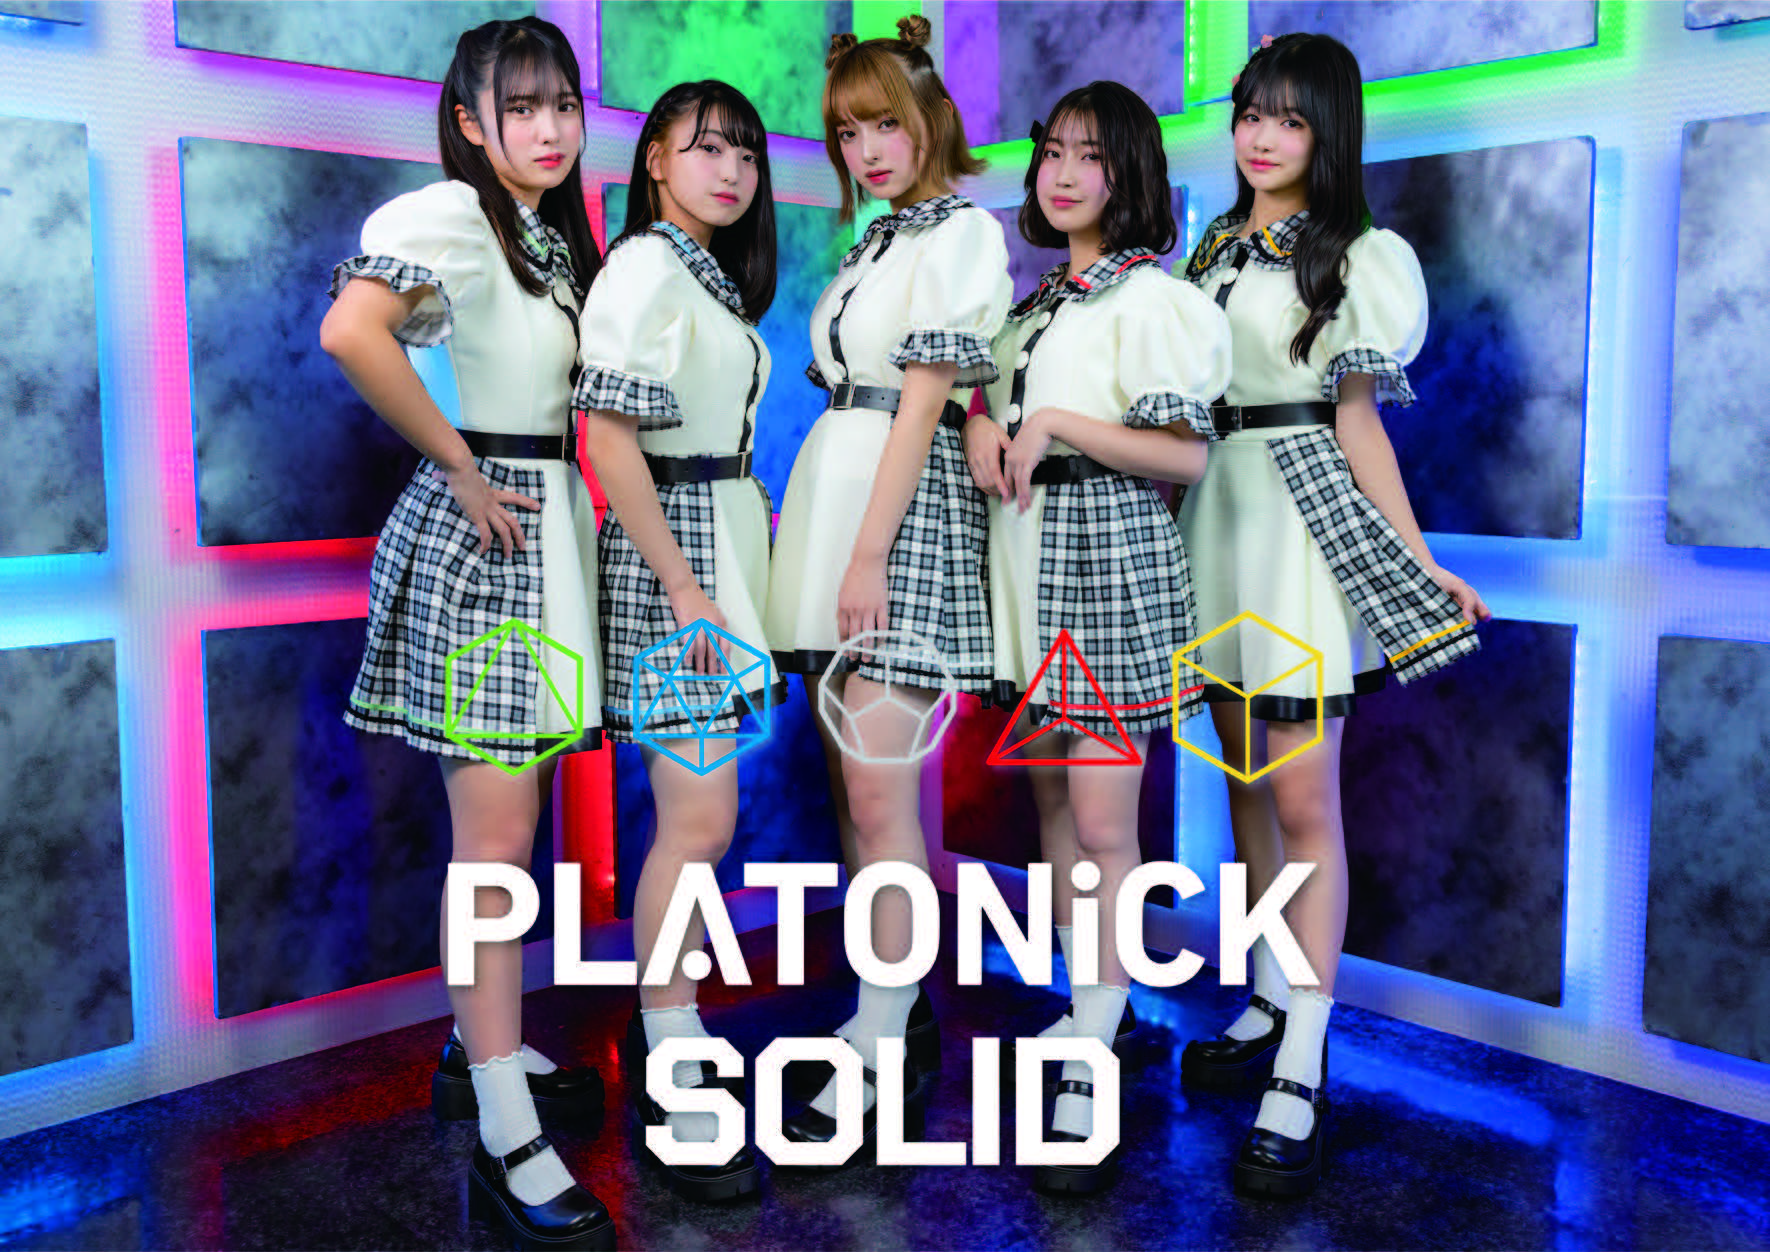 正多面体をテーマにしたアイドルグループ『PLATONiCK SOLID』が10月29日に堂々のデビュー!!：PLATONiCK SOLID